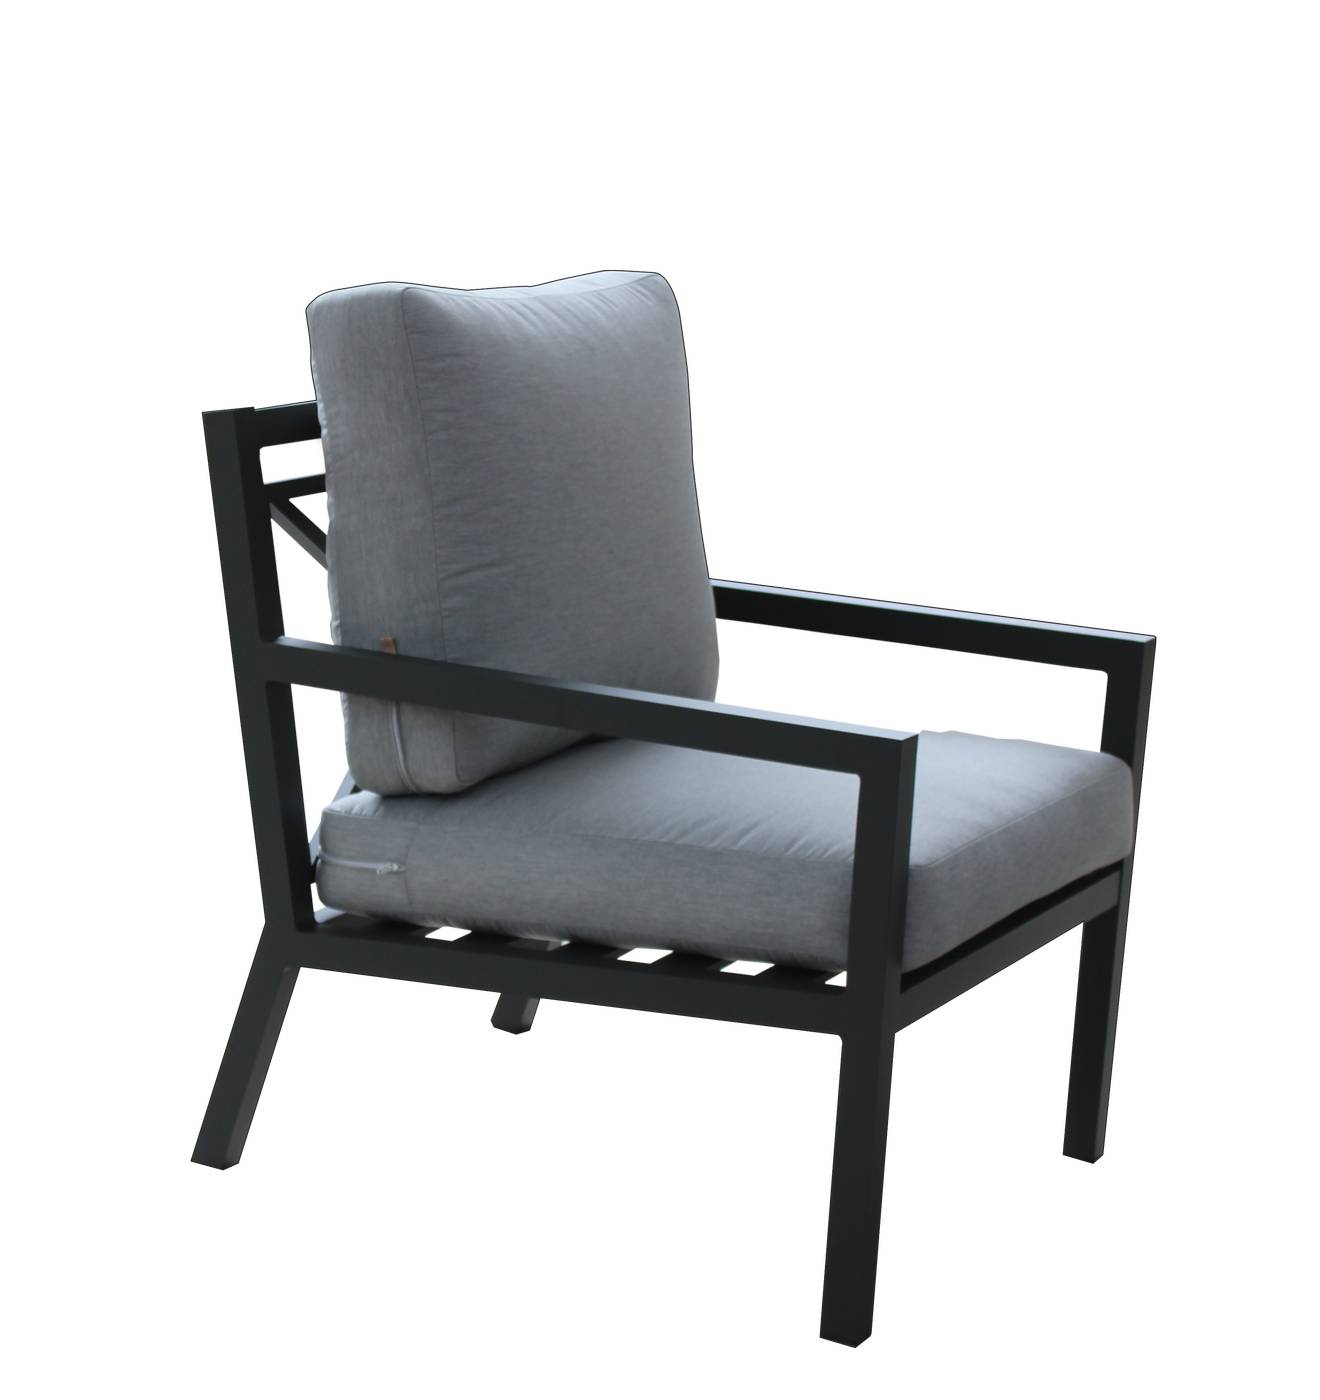 Set Aluminio Luxe Dounvil-8 - Conjunto de aluminio de lujo que incluye: un sofá tres plazas, dos sillones, una mesa de centro y cojines. Disponible en color blanco, antracita, champagne, plata o marrón